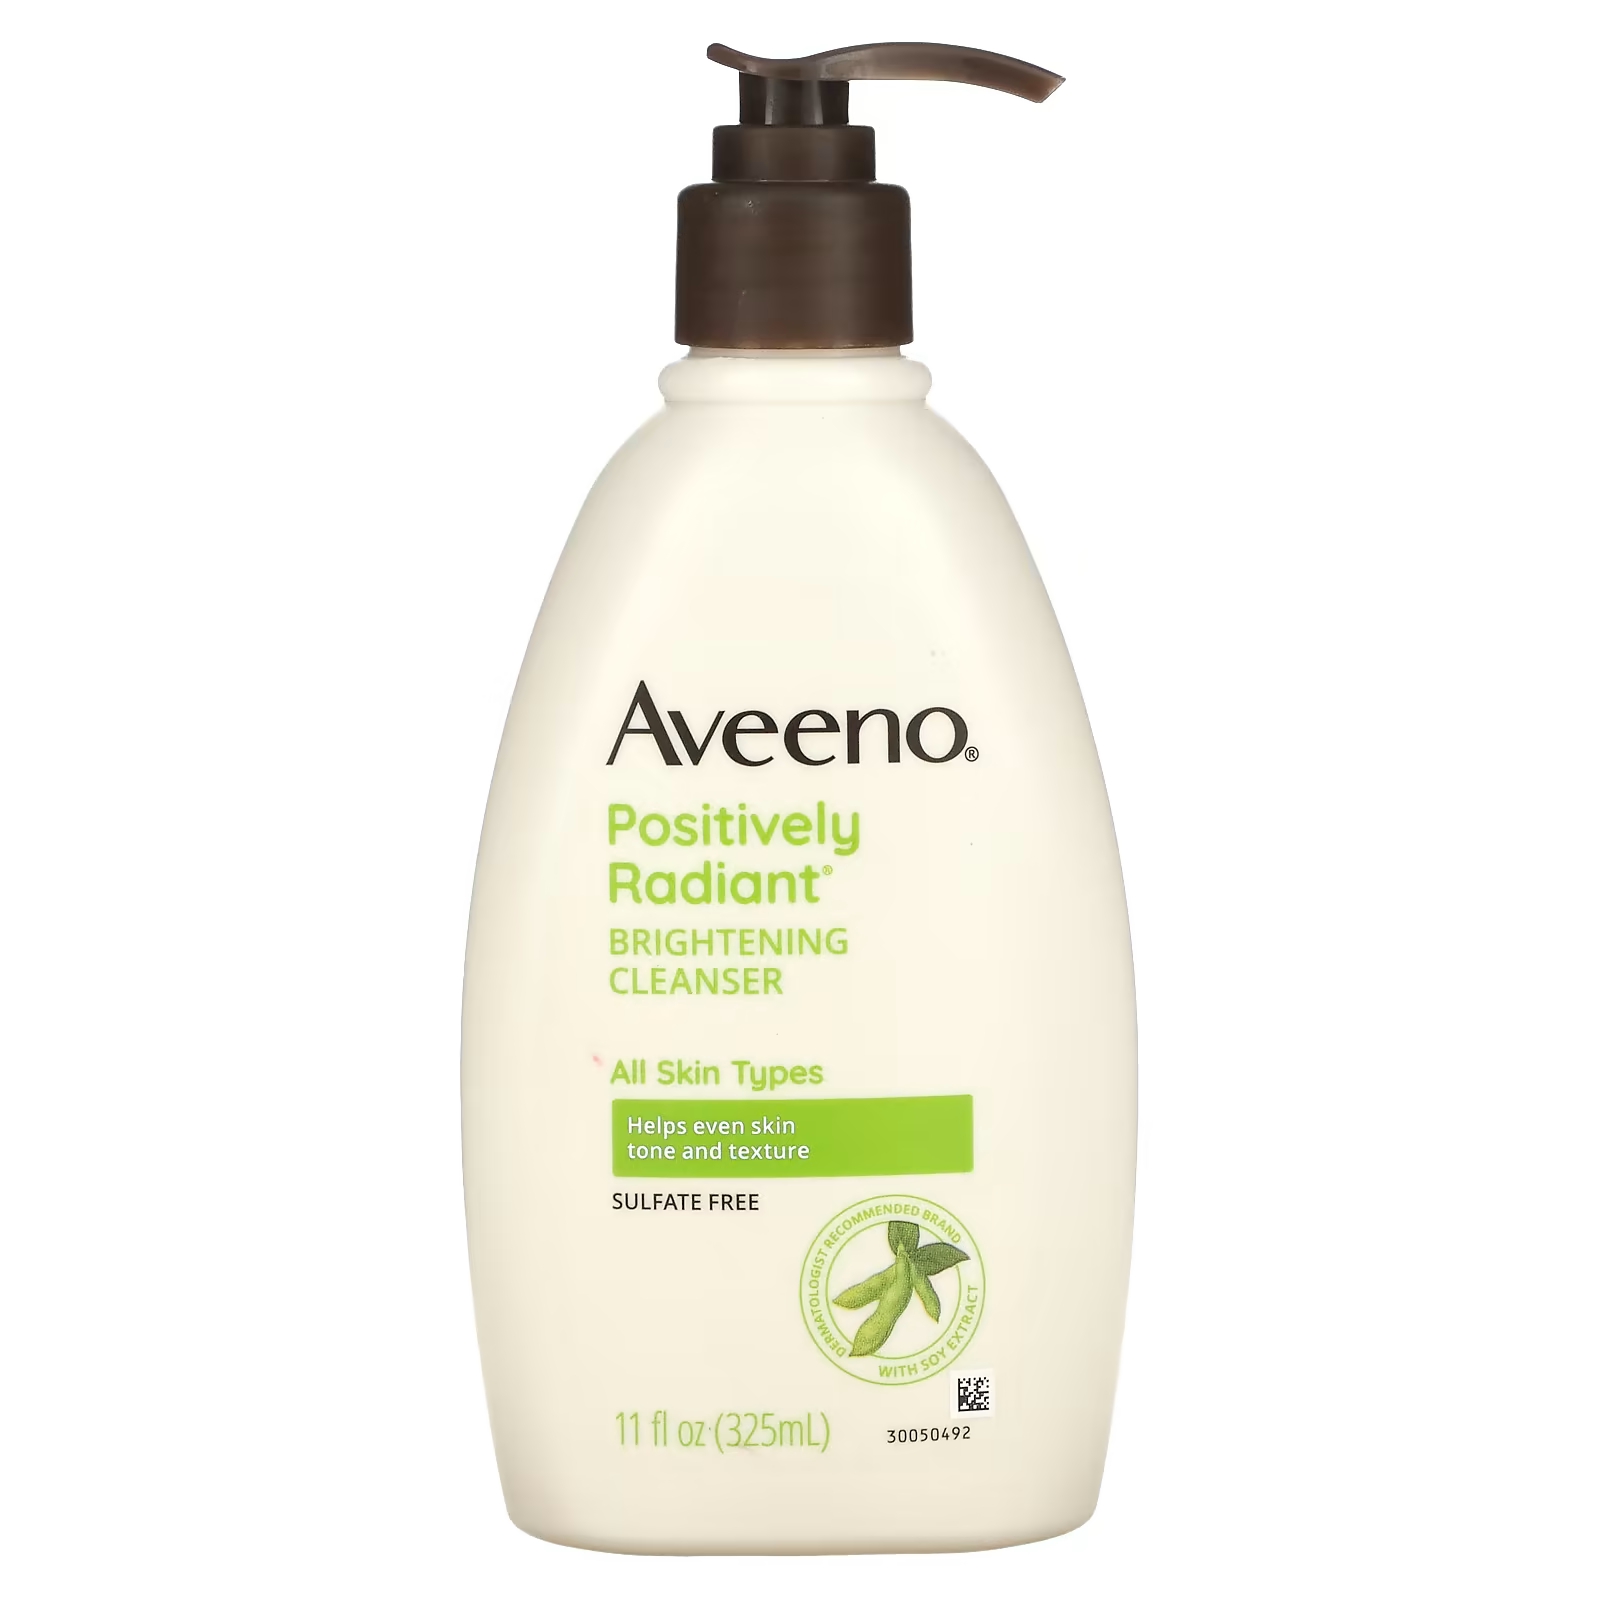 Средство очищающее Aveeno Positively Radiant, 325 мл очищающее молочко aveeno на основе овса 232 мл